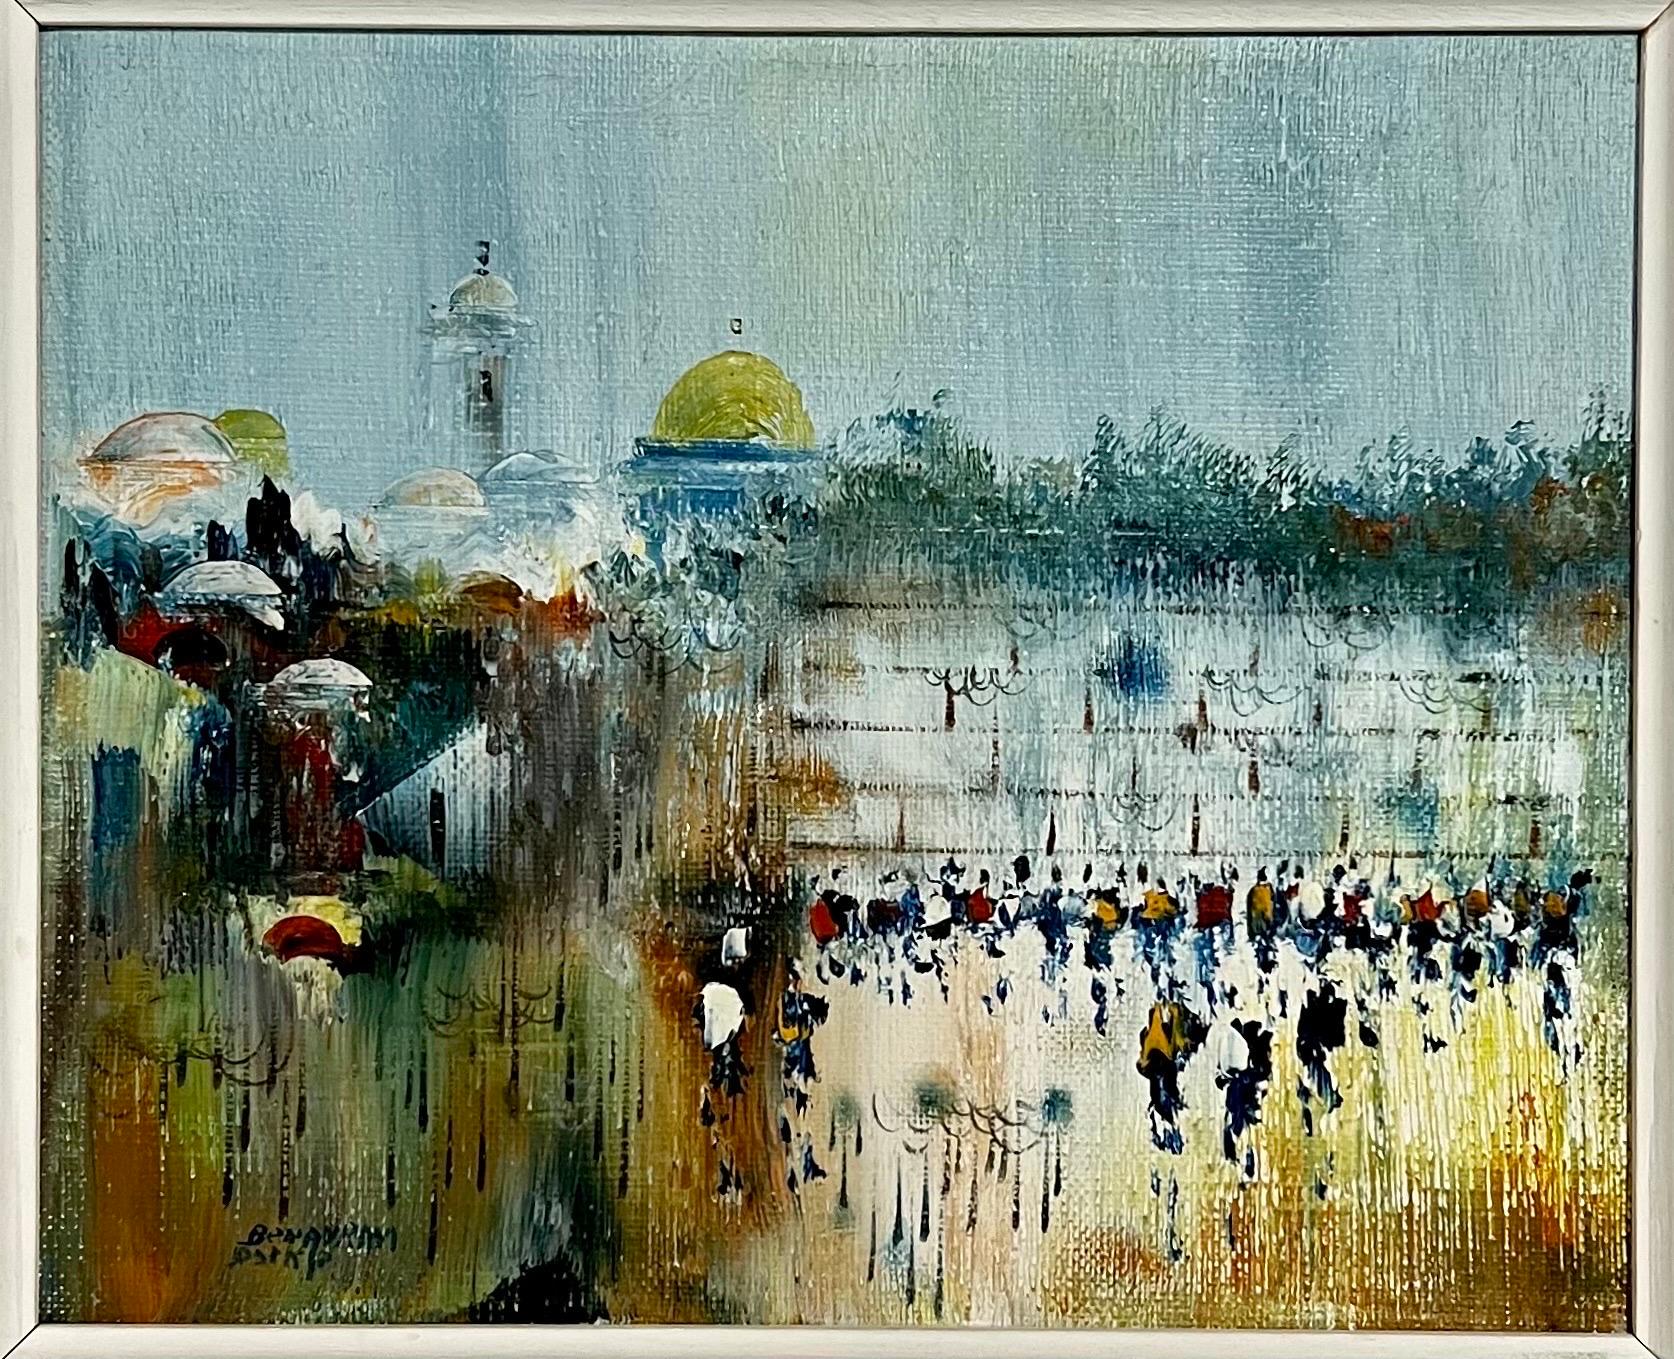 Landscape Painting Edward Ben Avram - Peinture à l'huile sur toile de l'école israélienne de Bezalel à Jérusalem et au Kotel 